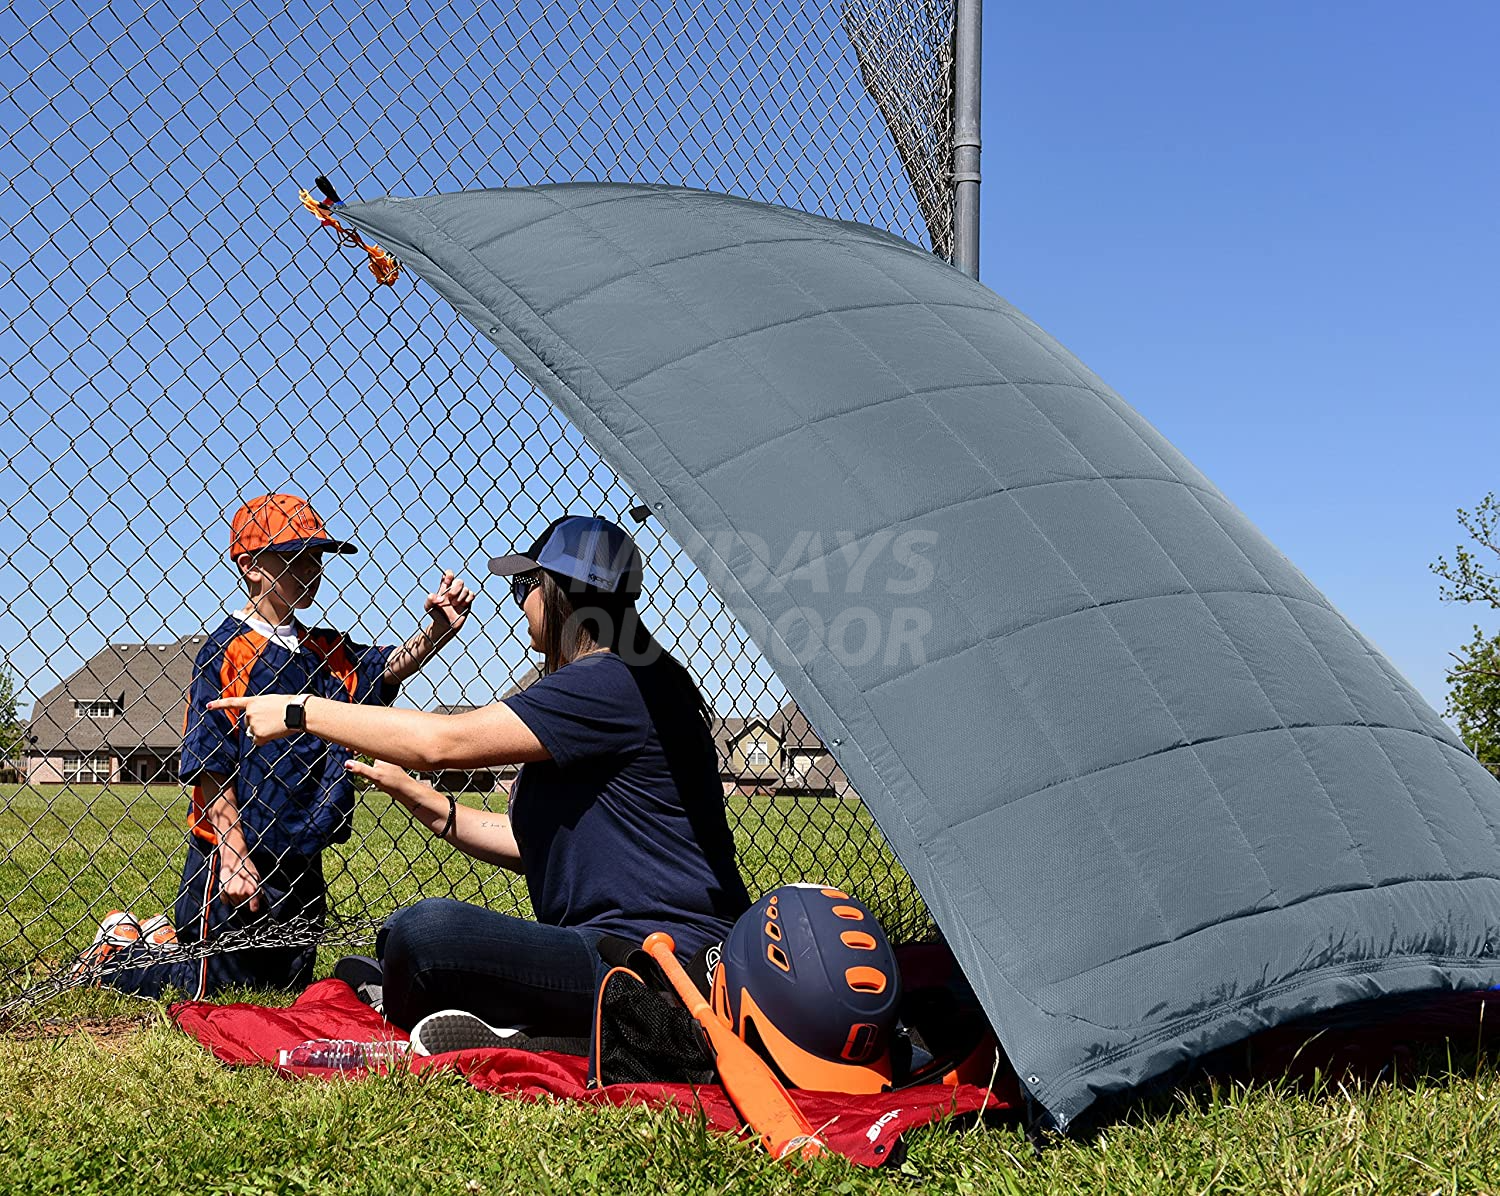 Водонепроницаемое ветрозащитное наружное одеяло с капюшоном для стадиона Кемпинг-пончо MDSCH-4